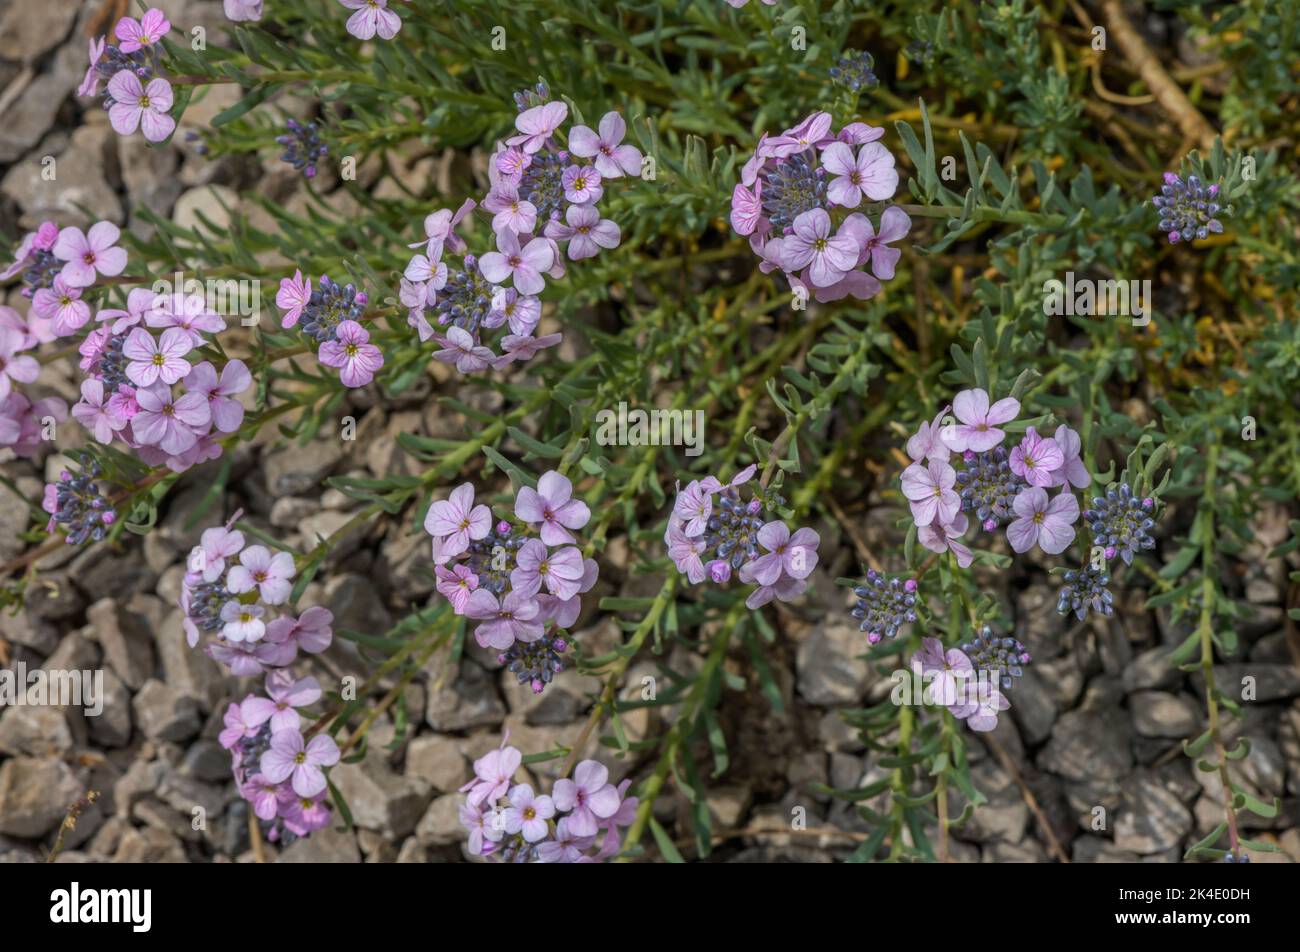 Persian stonecress, Aethionema grandiflorum, in flower, Caucasus Stock Photo